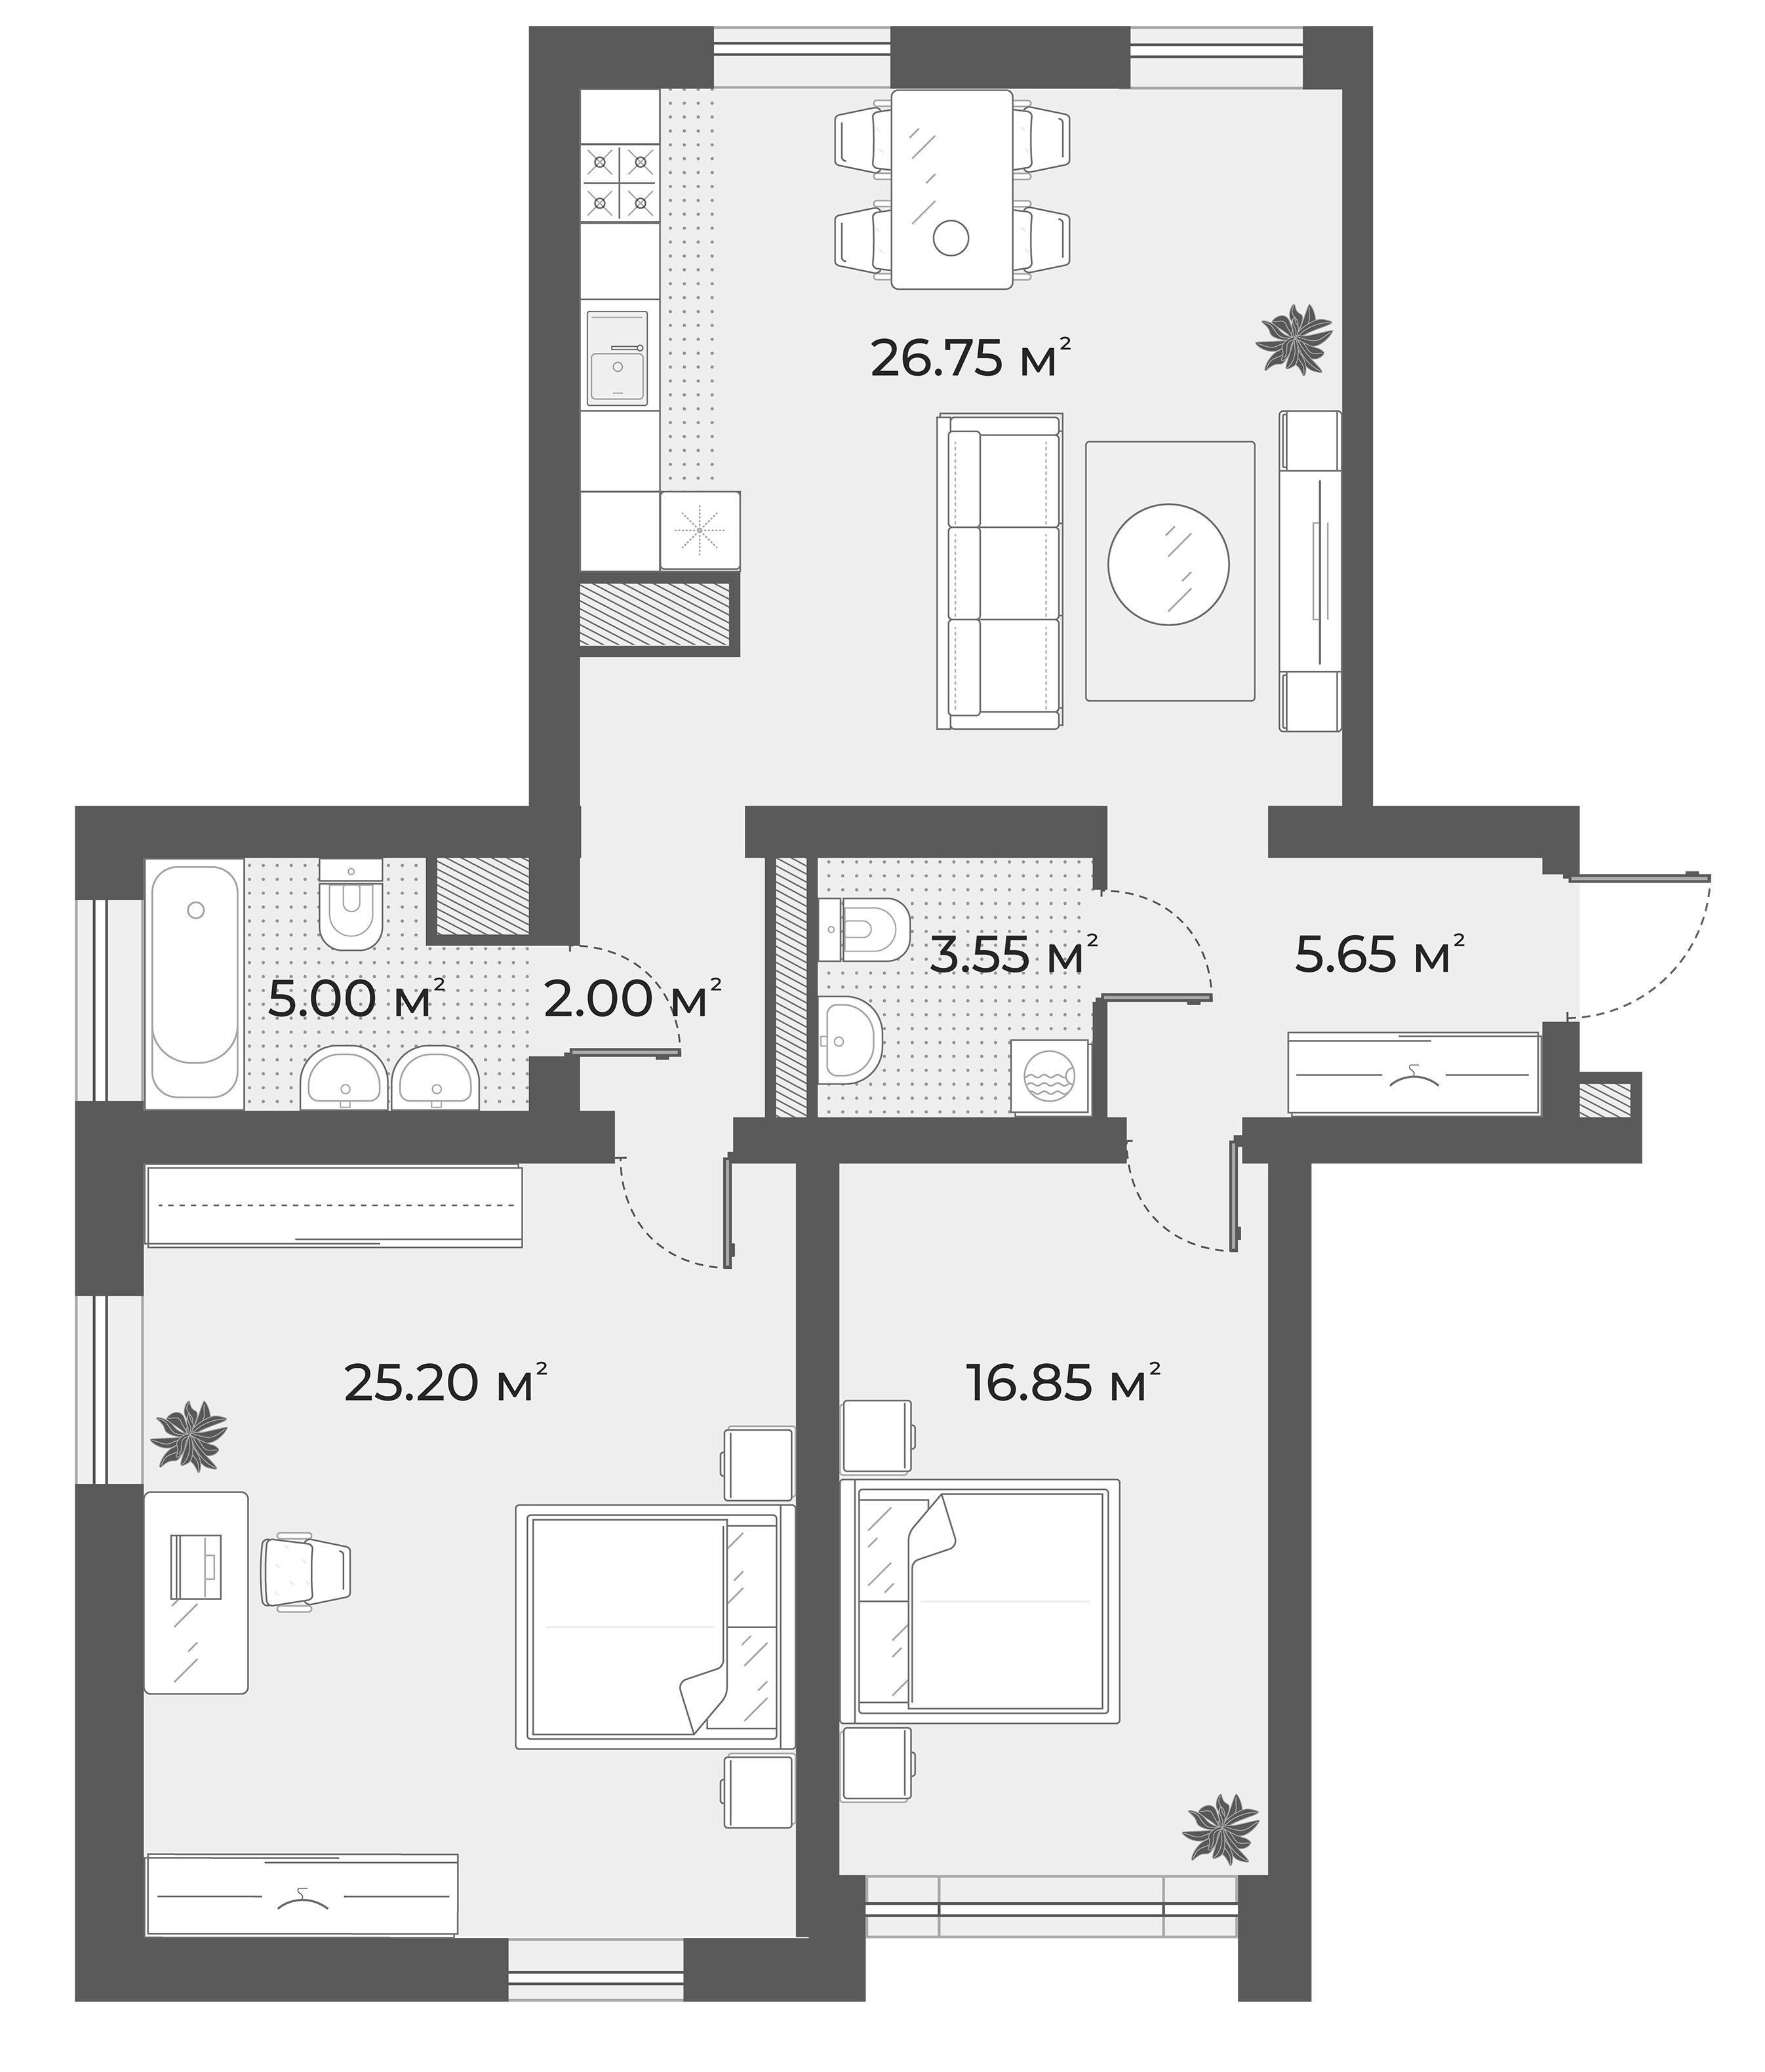 2-комнатная квартира  №3 в Aura: 84.1 м², этаж 1 - купить в Санкт-Петербурге